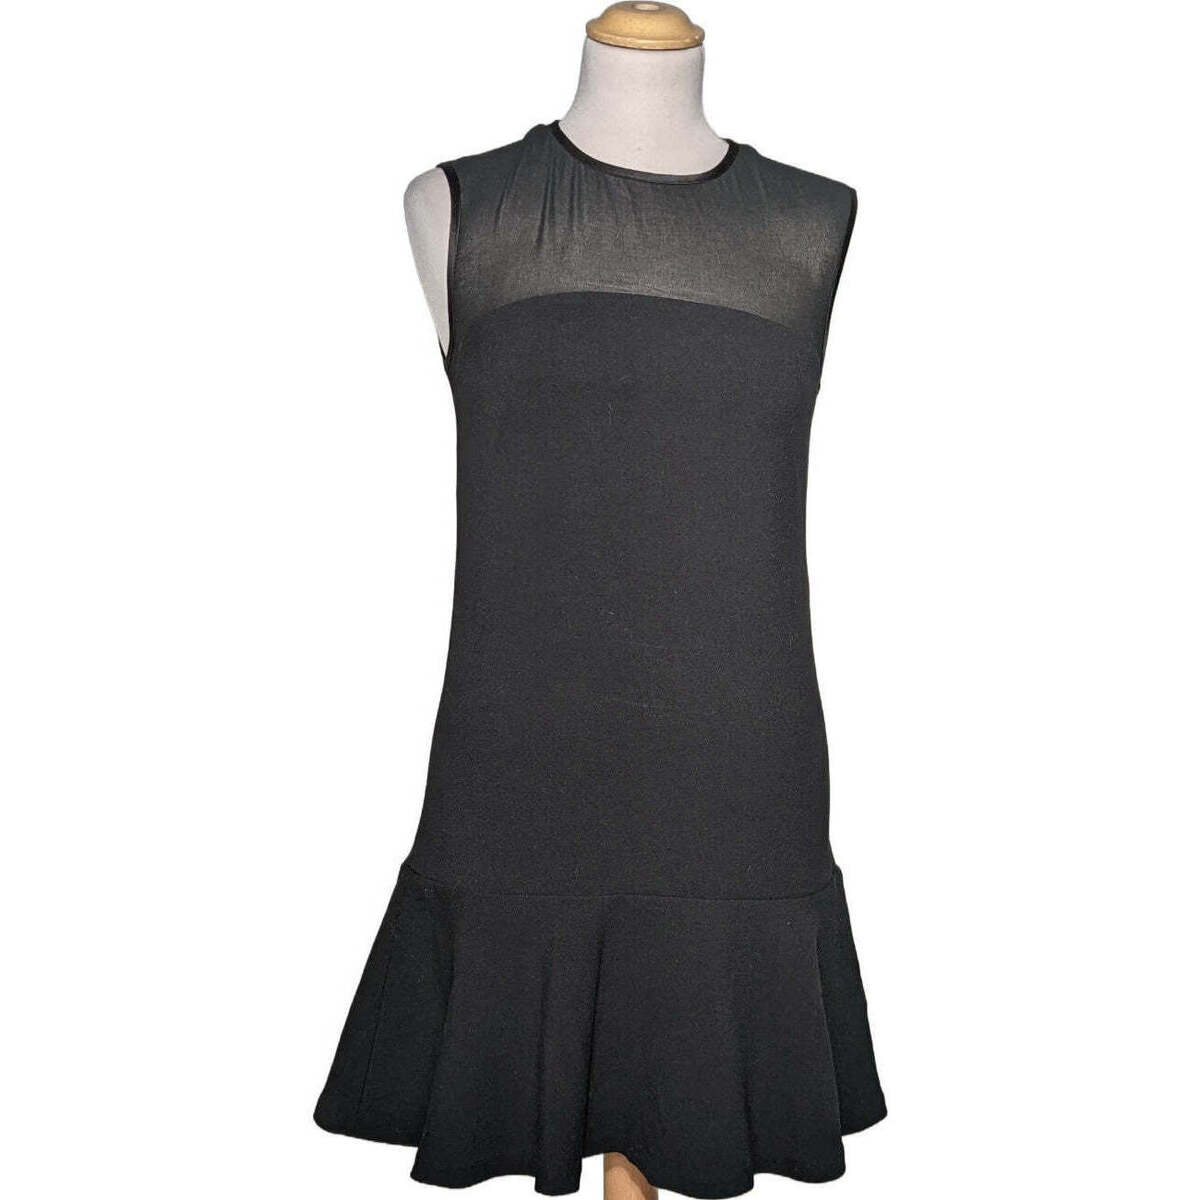 Vêtements Femme Robes, Manteaux, Vestes robe courte  34 - T0 - XS Noir Noir